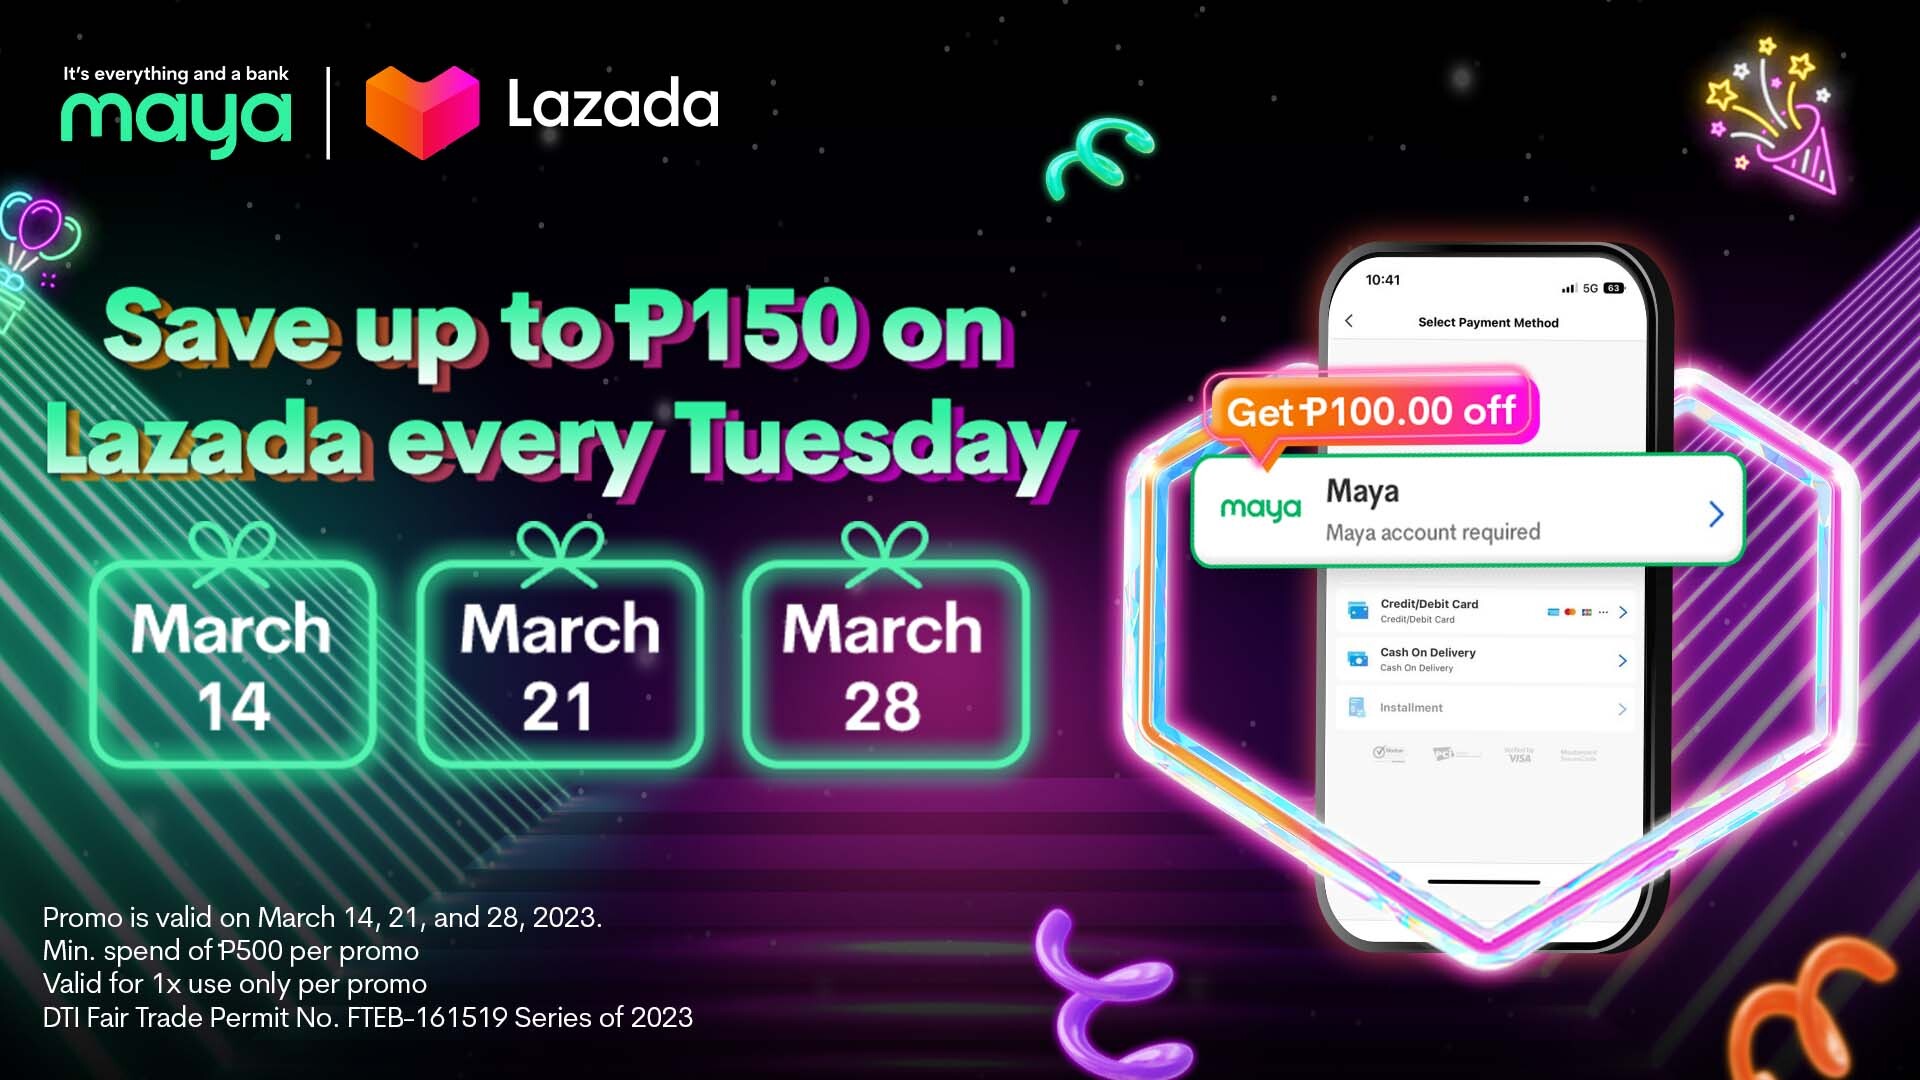 031023 - Maya - EN - lazada bday deals dealspage